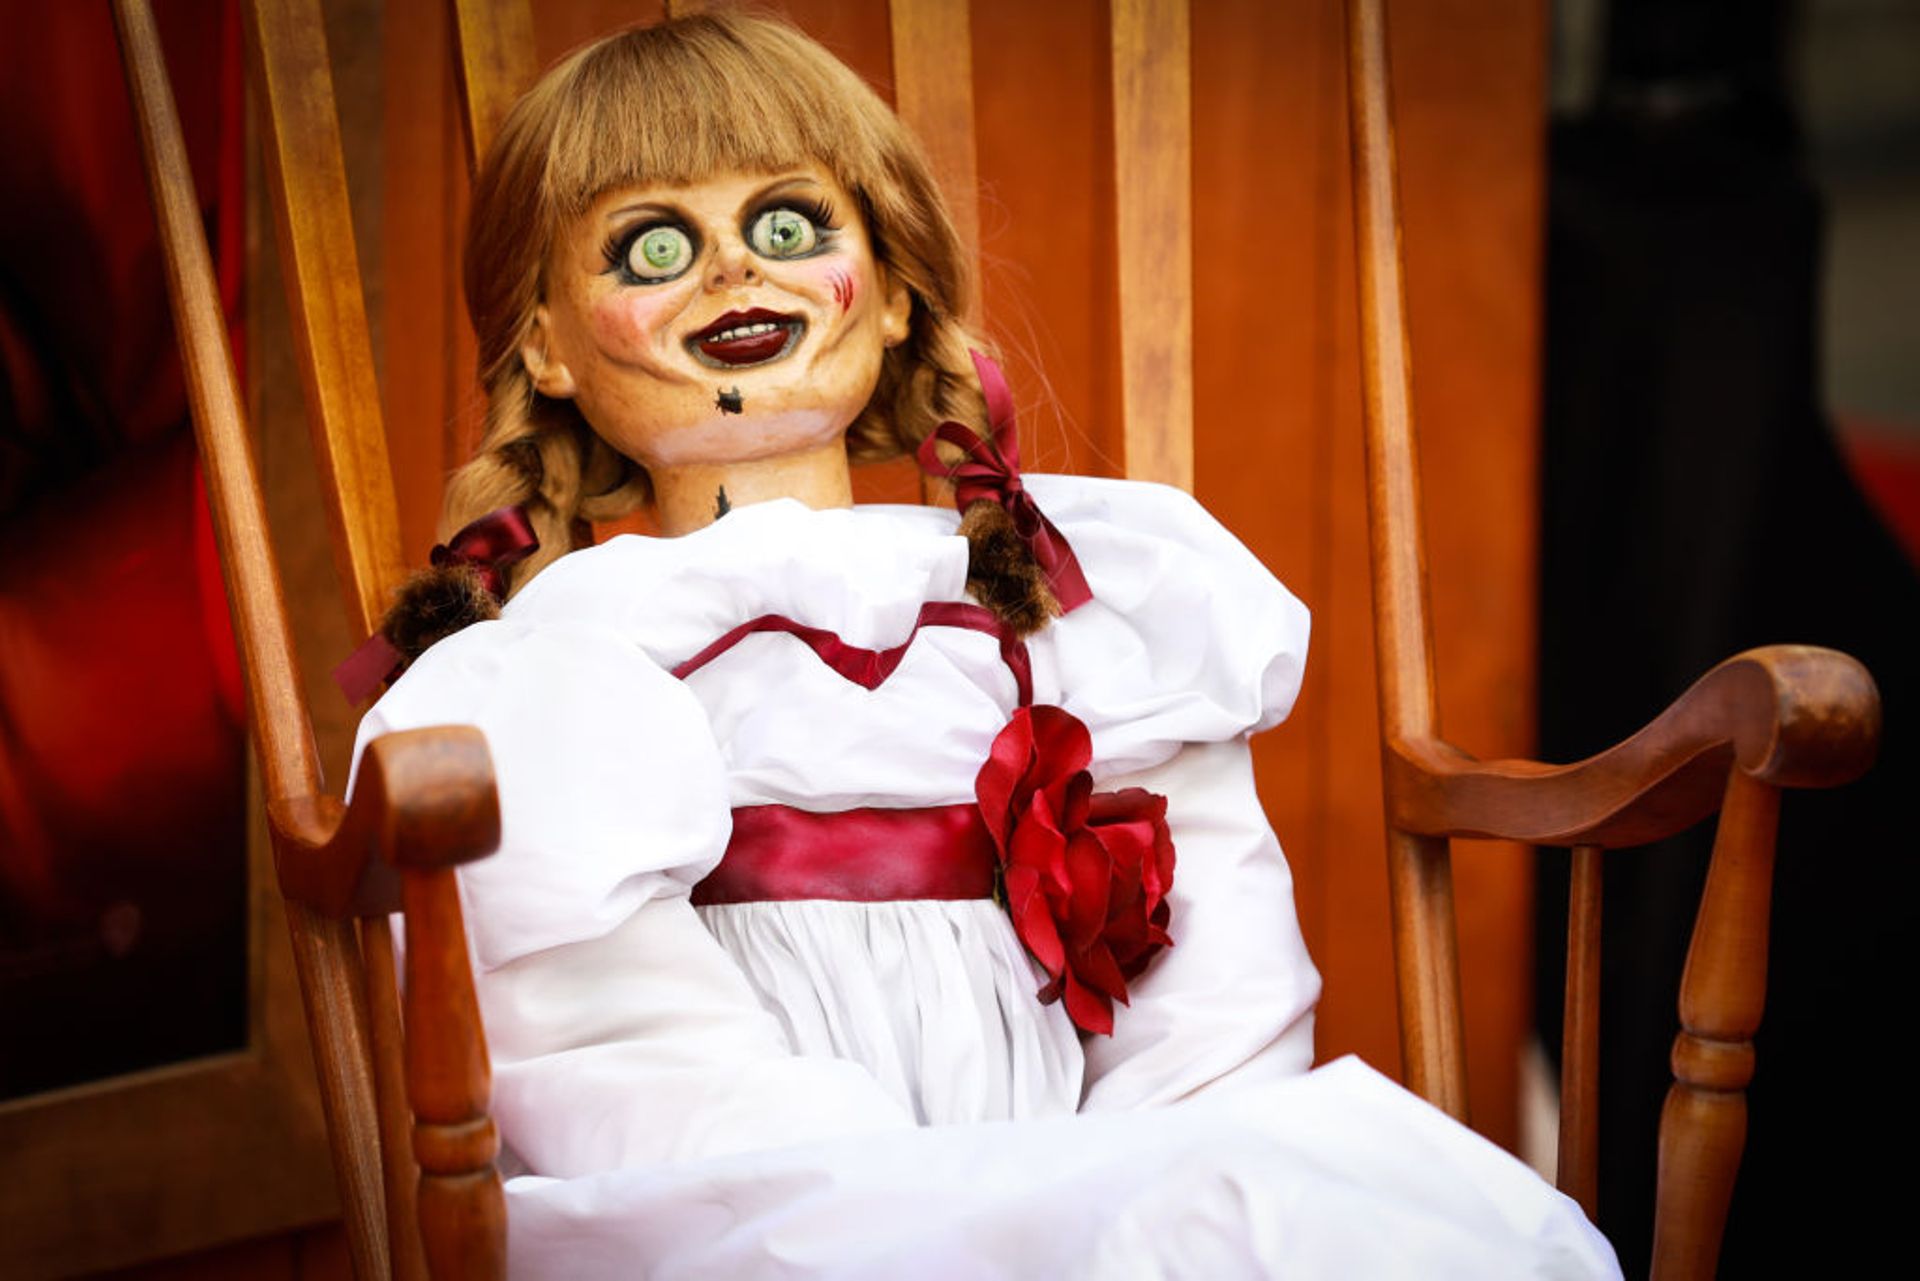 La véritable histoire derrière la poupée Annabelle